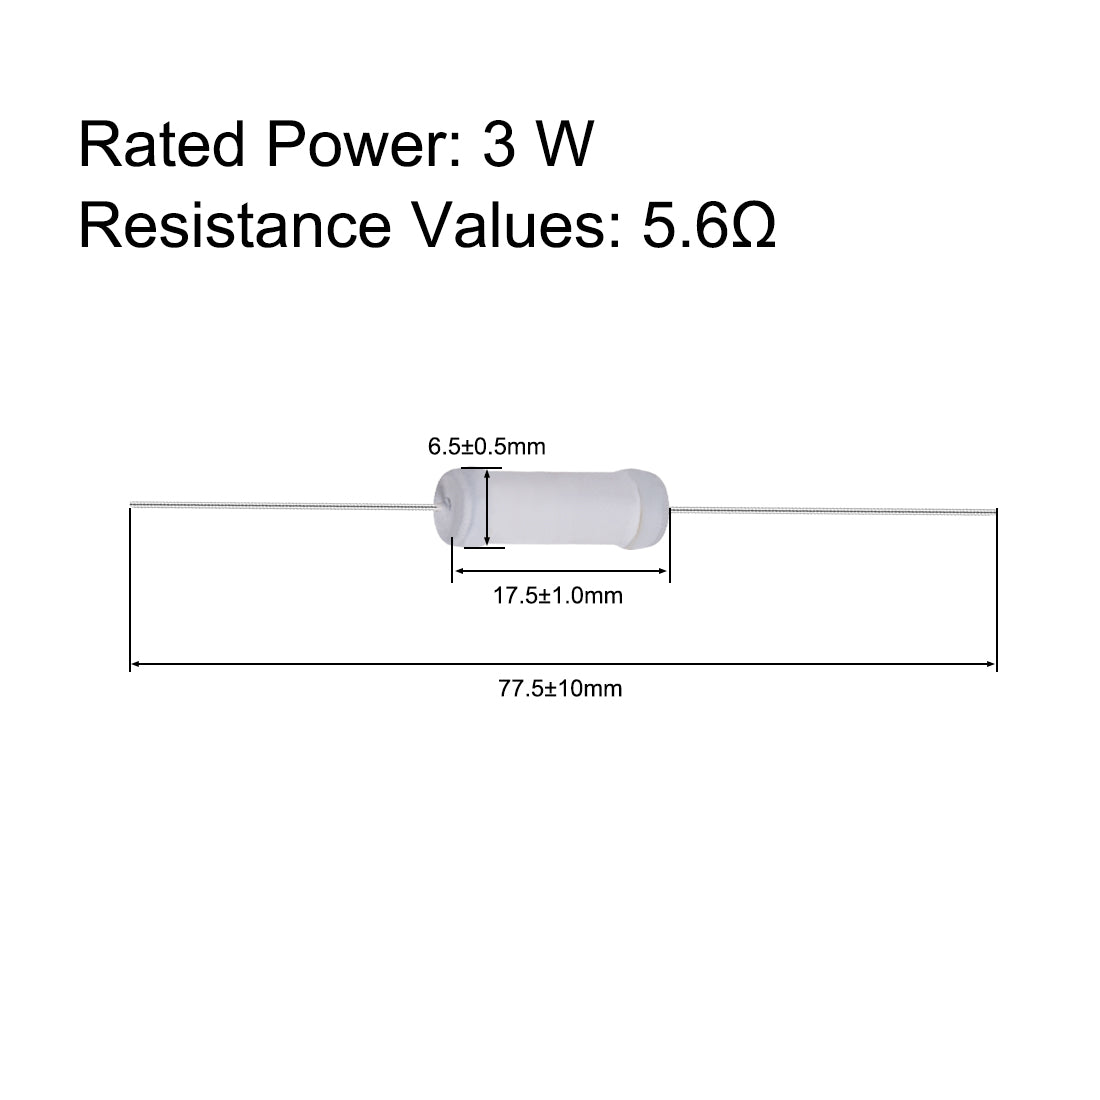 uxcell Uxcell 20pcs 3W 3 Watt Metal Oxide Film Resistor Lead 5.6 Ohm ±5% Tolerance